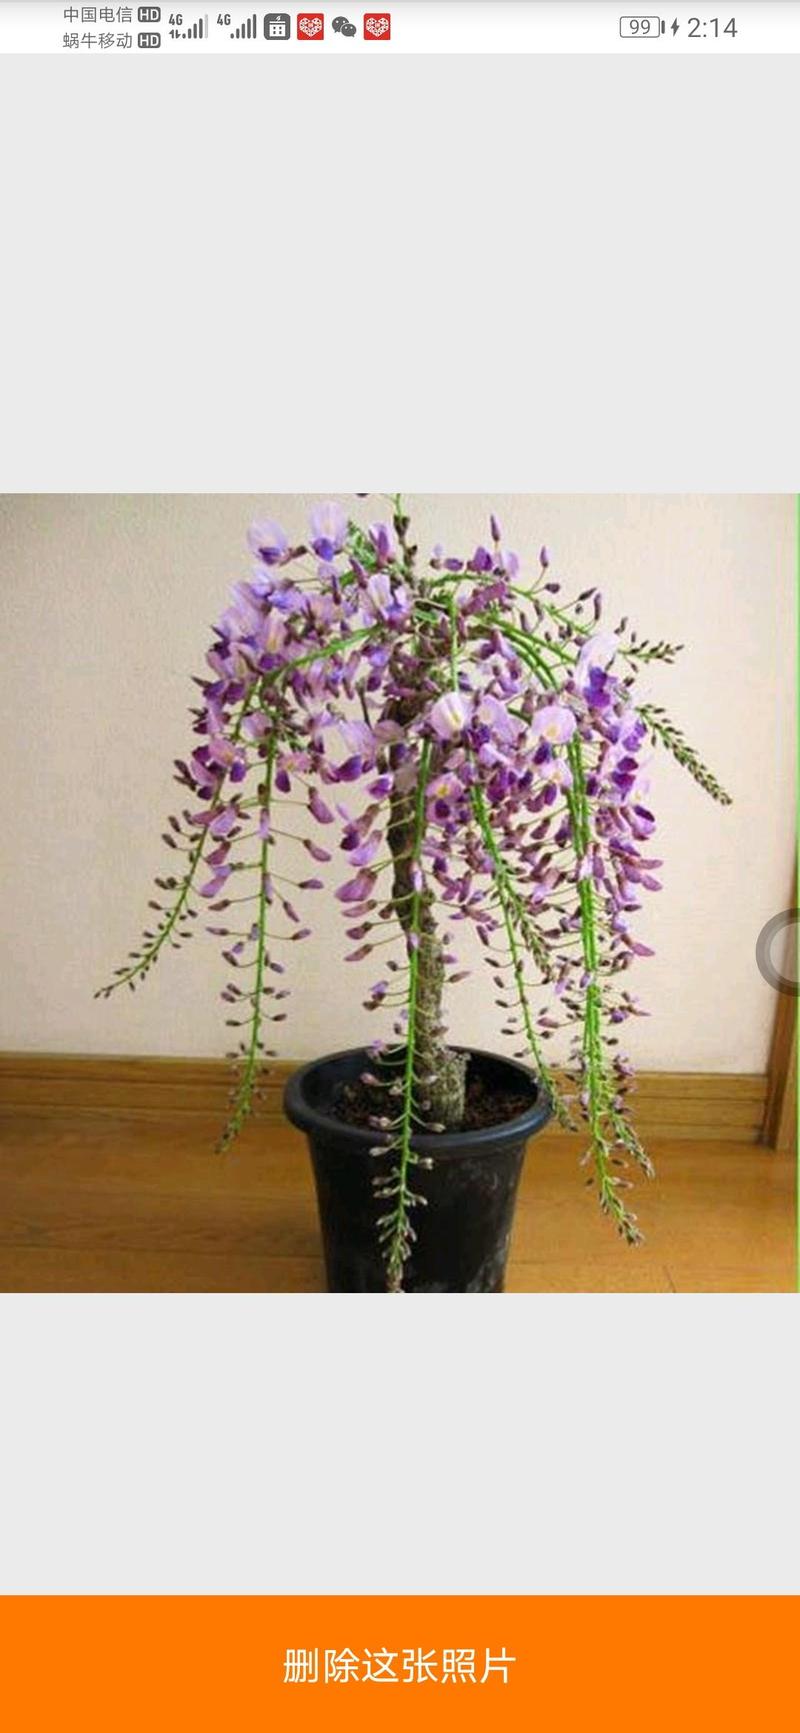 紫藤树苗盆栽爬藤植物花卉庭院耐寒、炮仗花四季开花